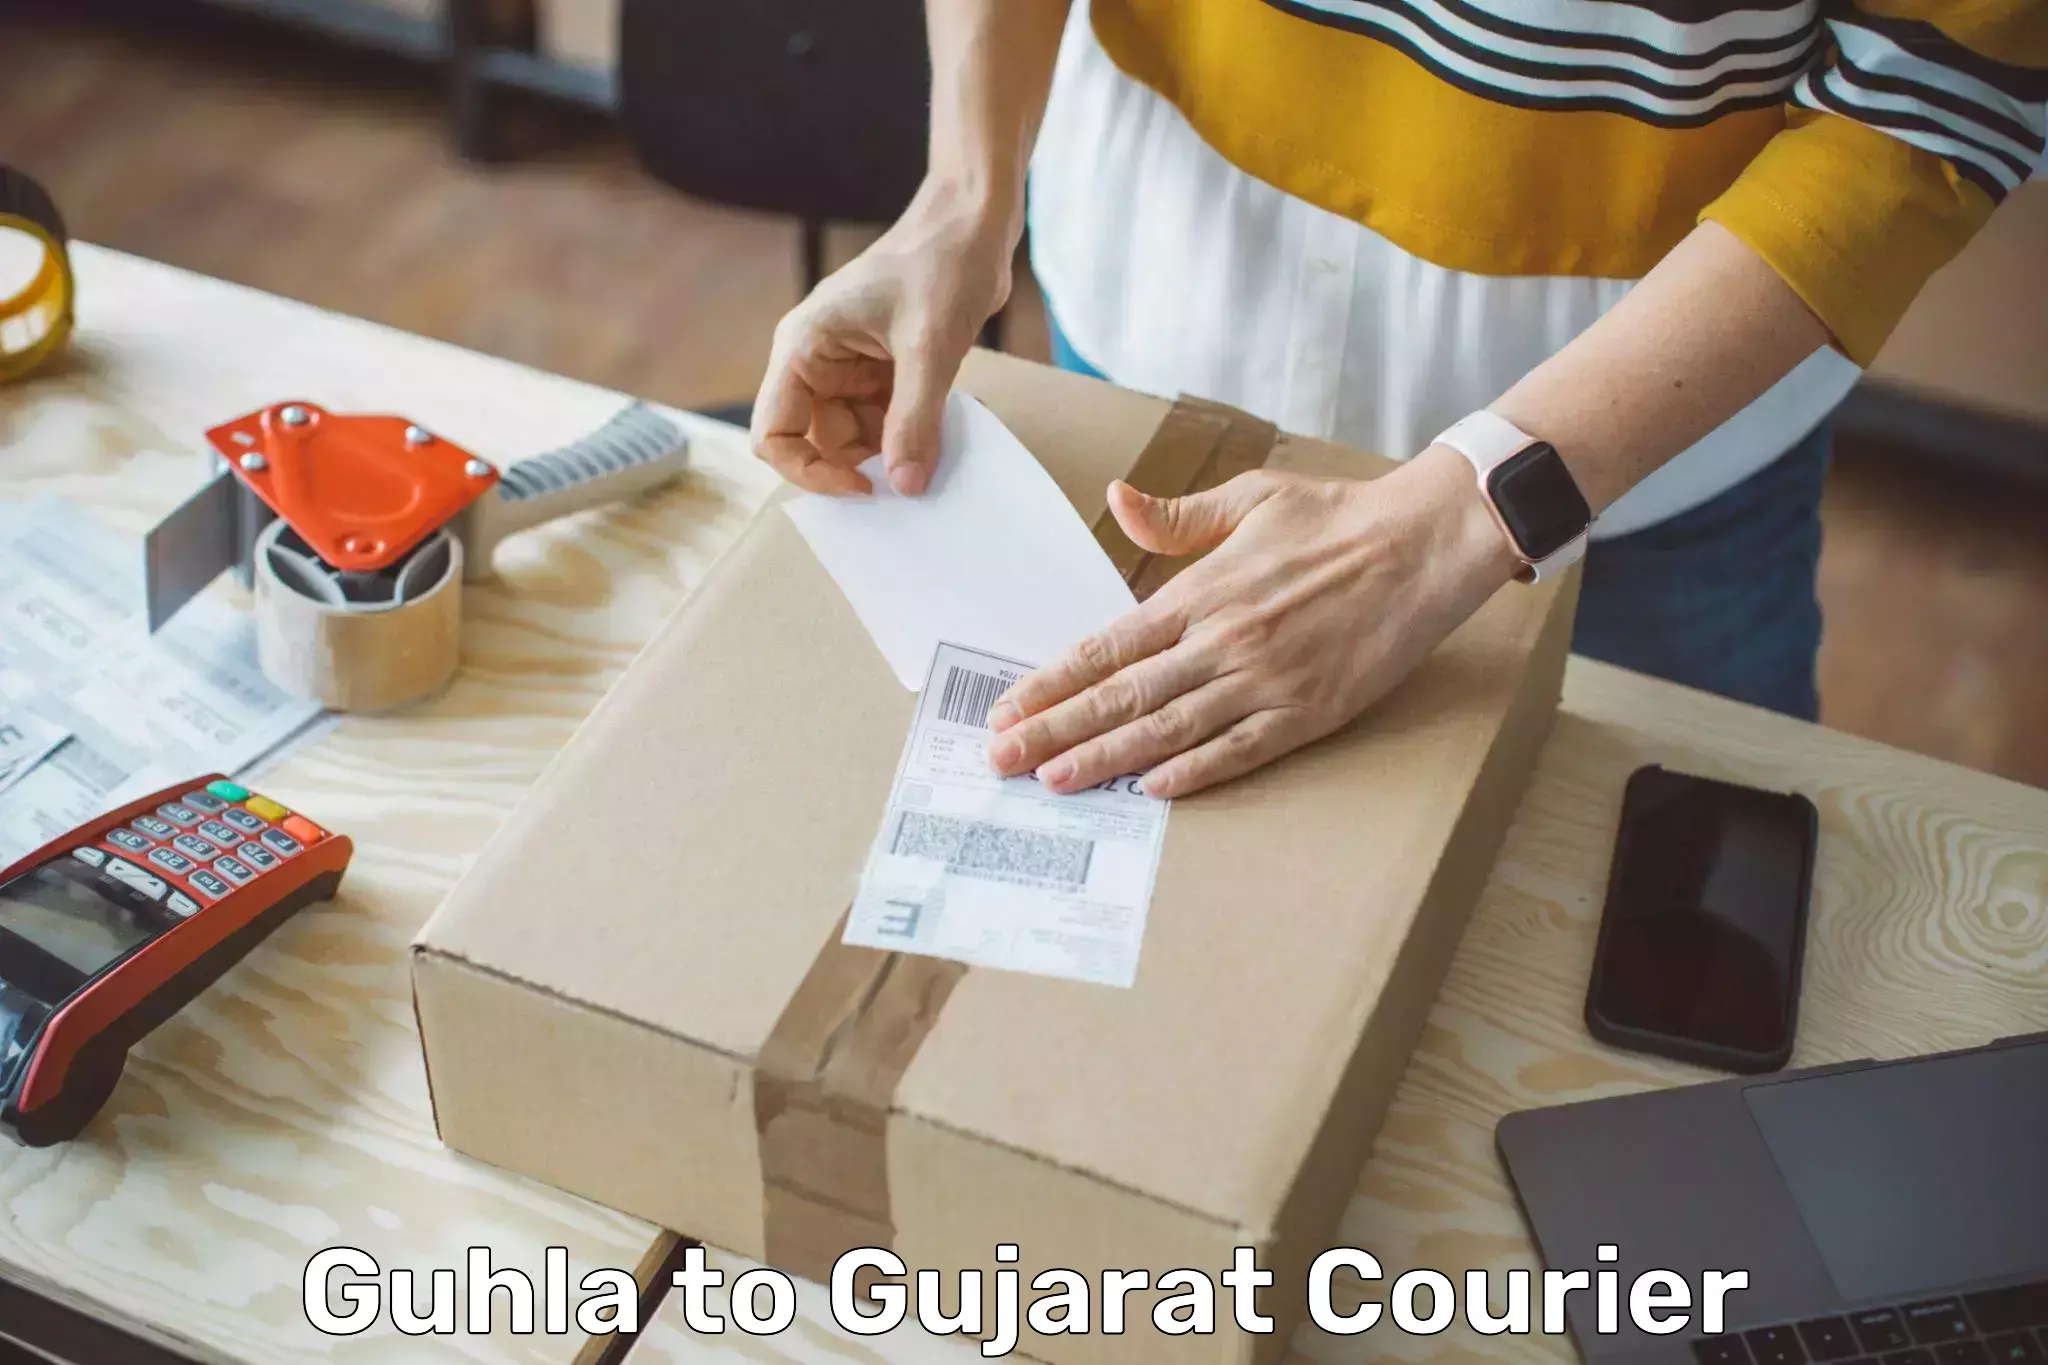 Easy access courier services Guhla to Deesa